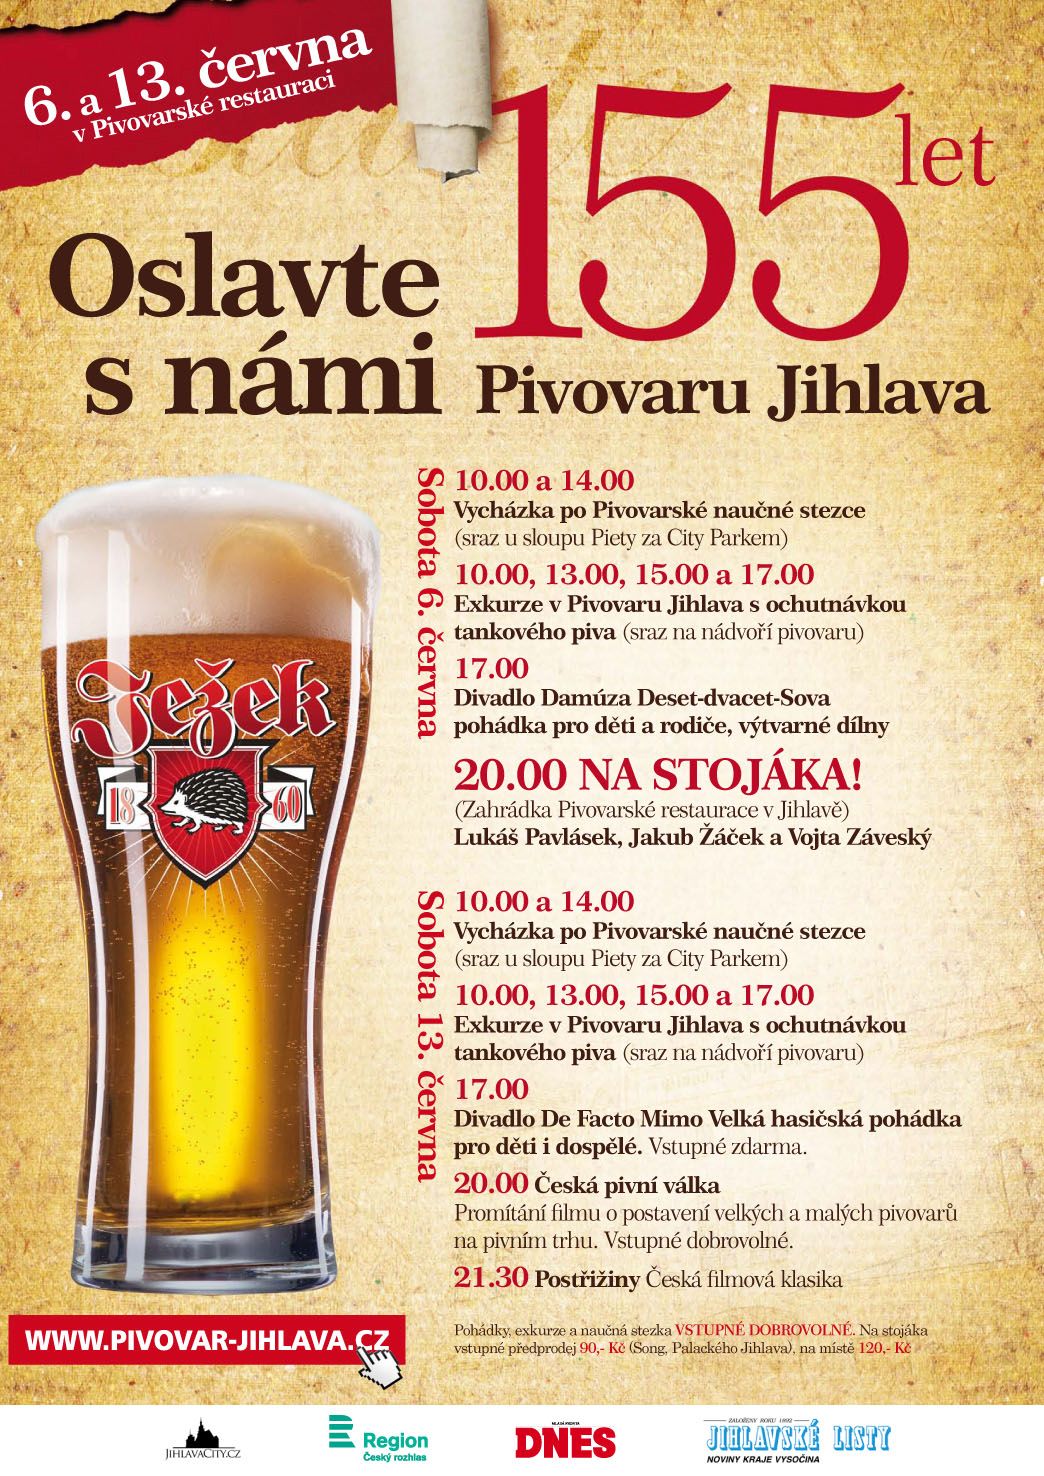 Pivovar Jihlava_Oslavte s námi 155 let_A2